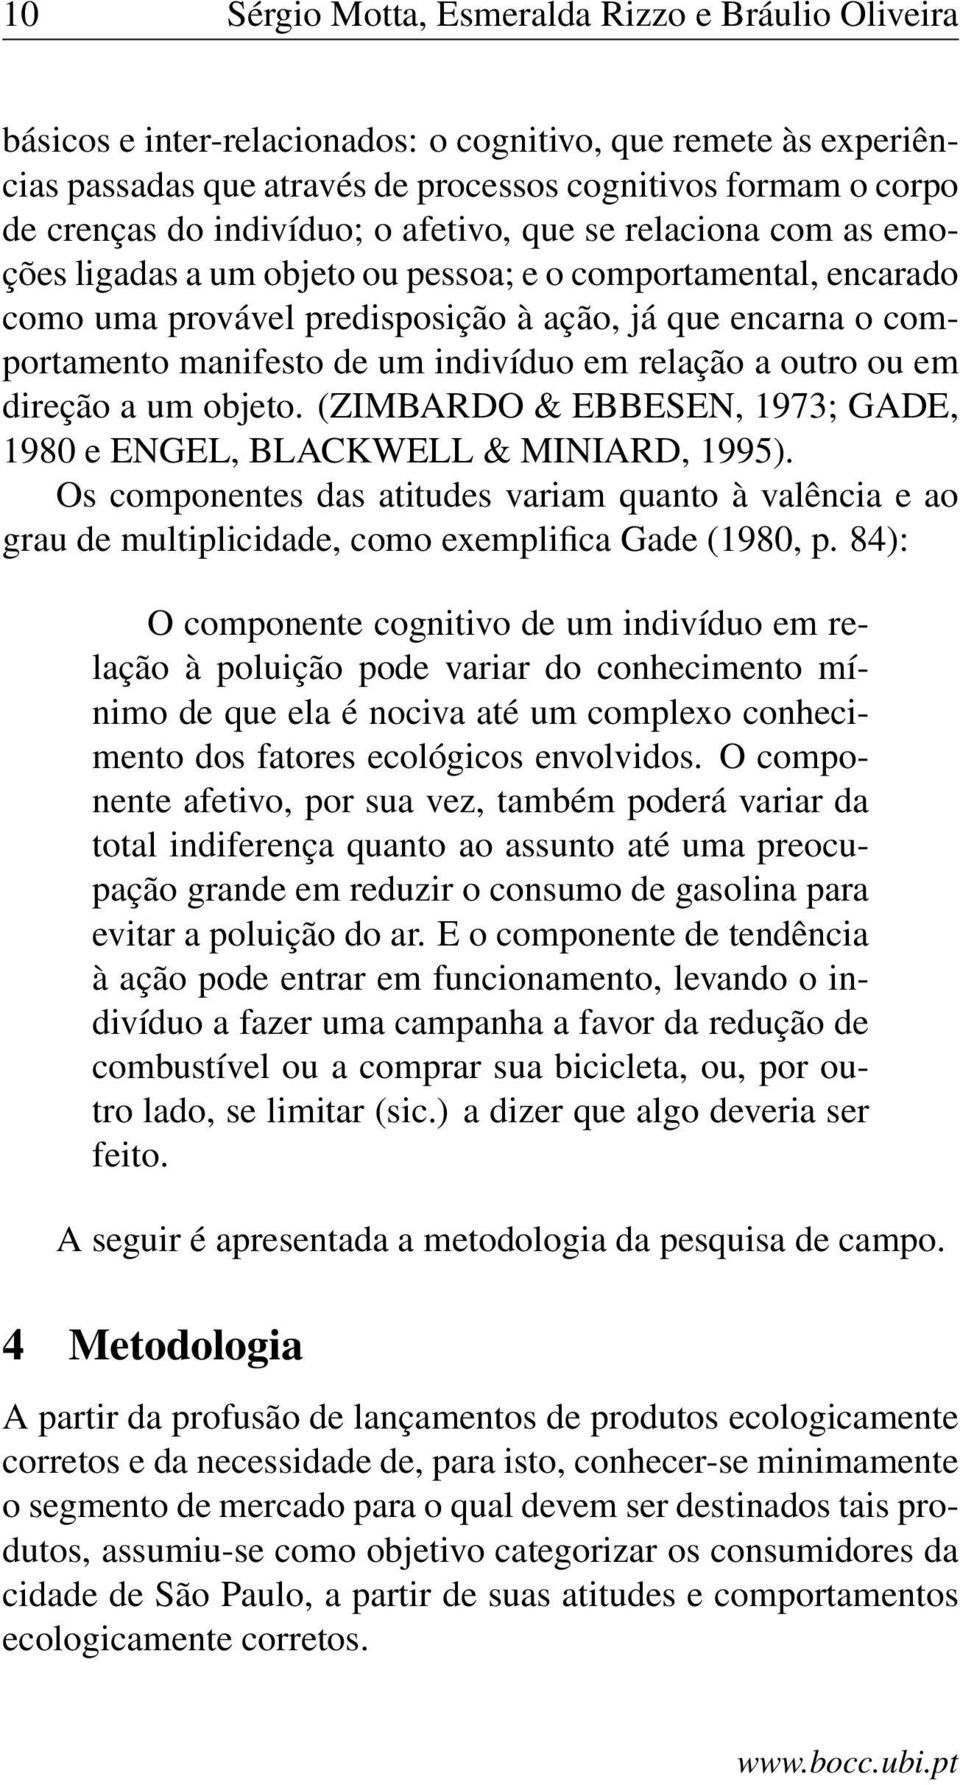 um indivíduo em relação a outro ou em direção a um objeto. (ZIMBARDO & EBBESEN, 1973; GADE, 1980 e ENGEL, BLACKWELL & MINIARD, 1995).